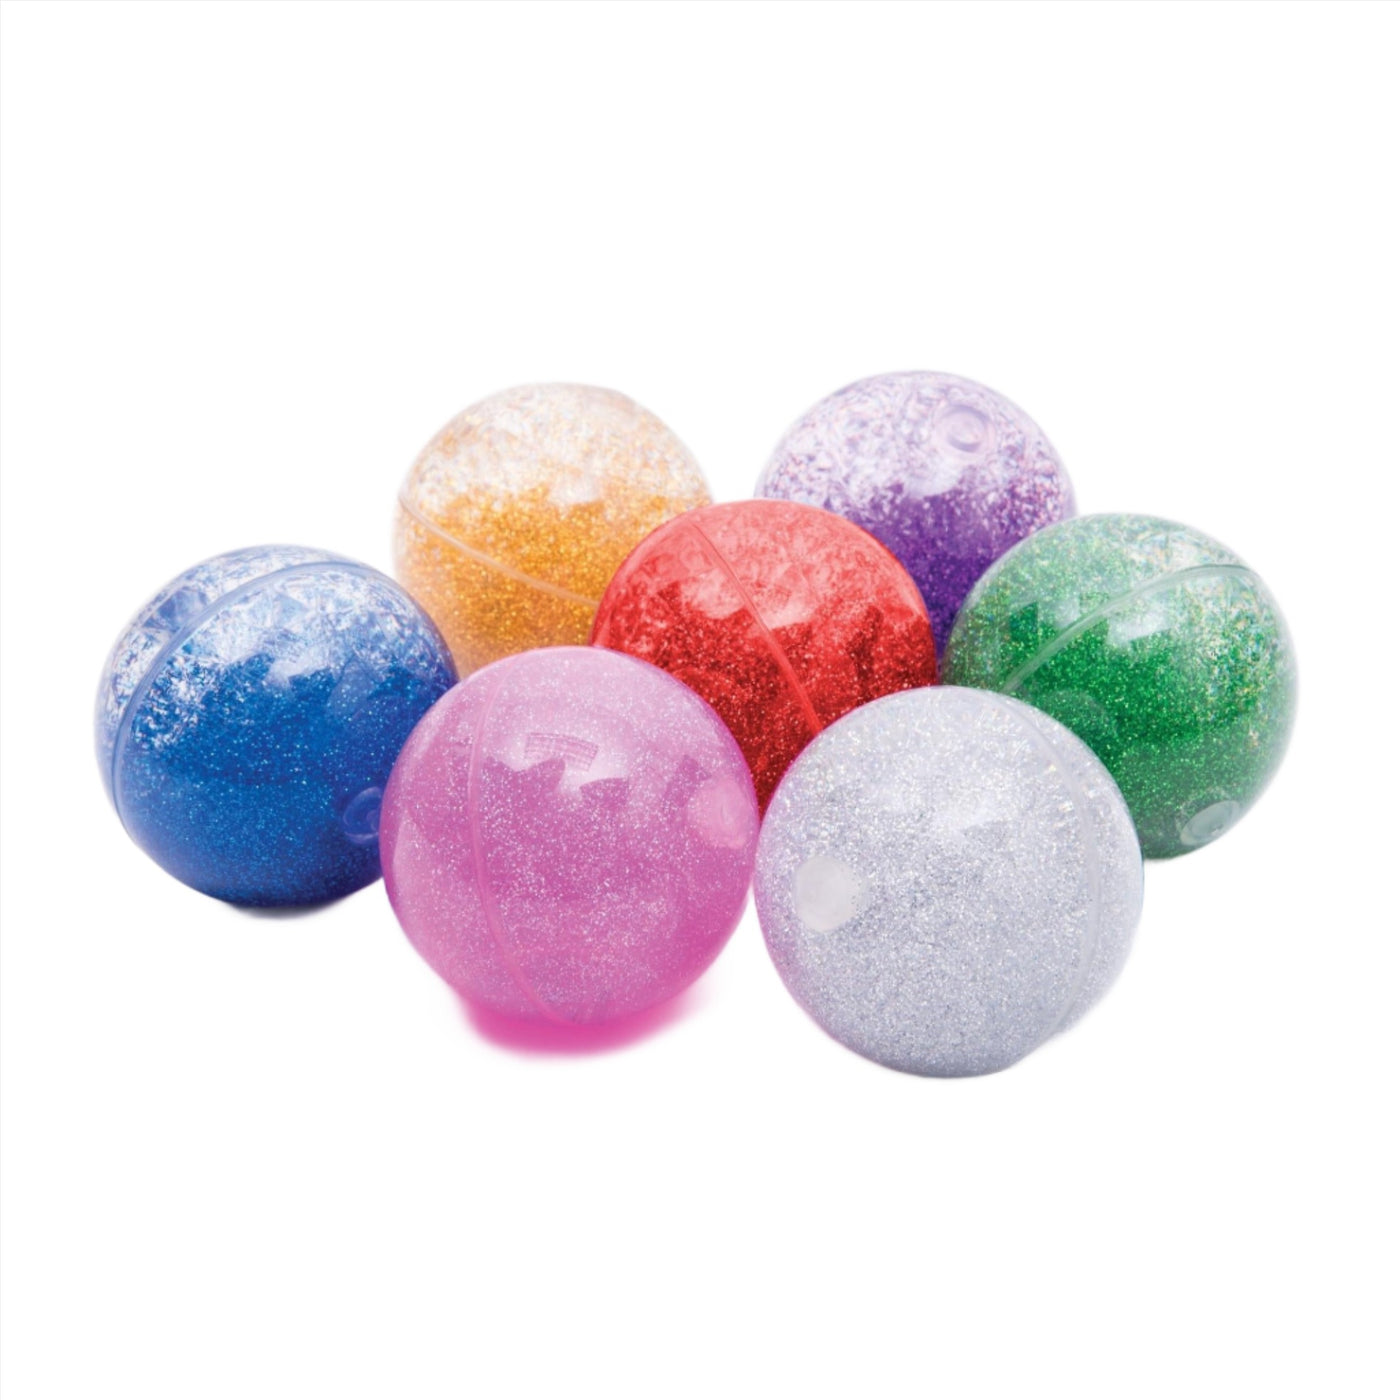 TickiT Rainbow Glitter Balls